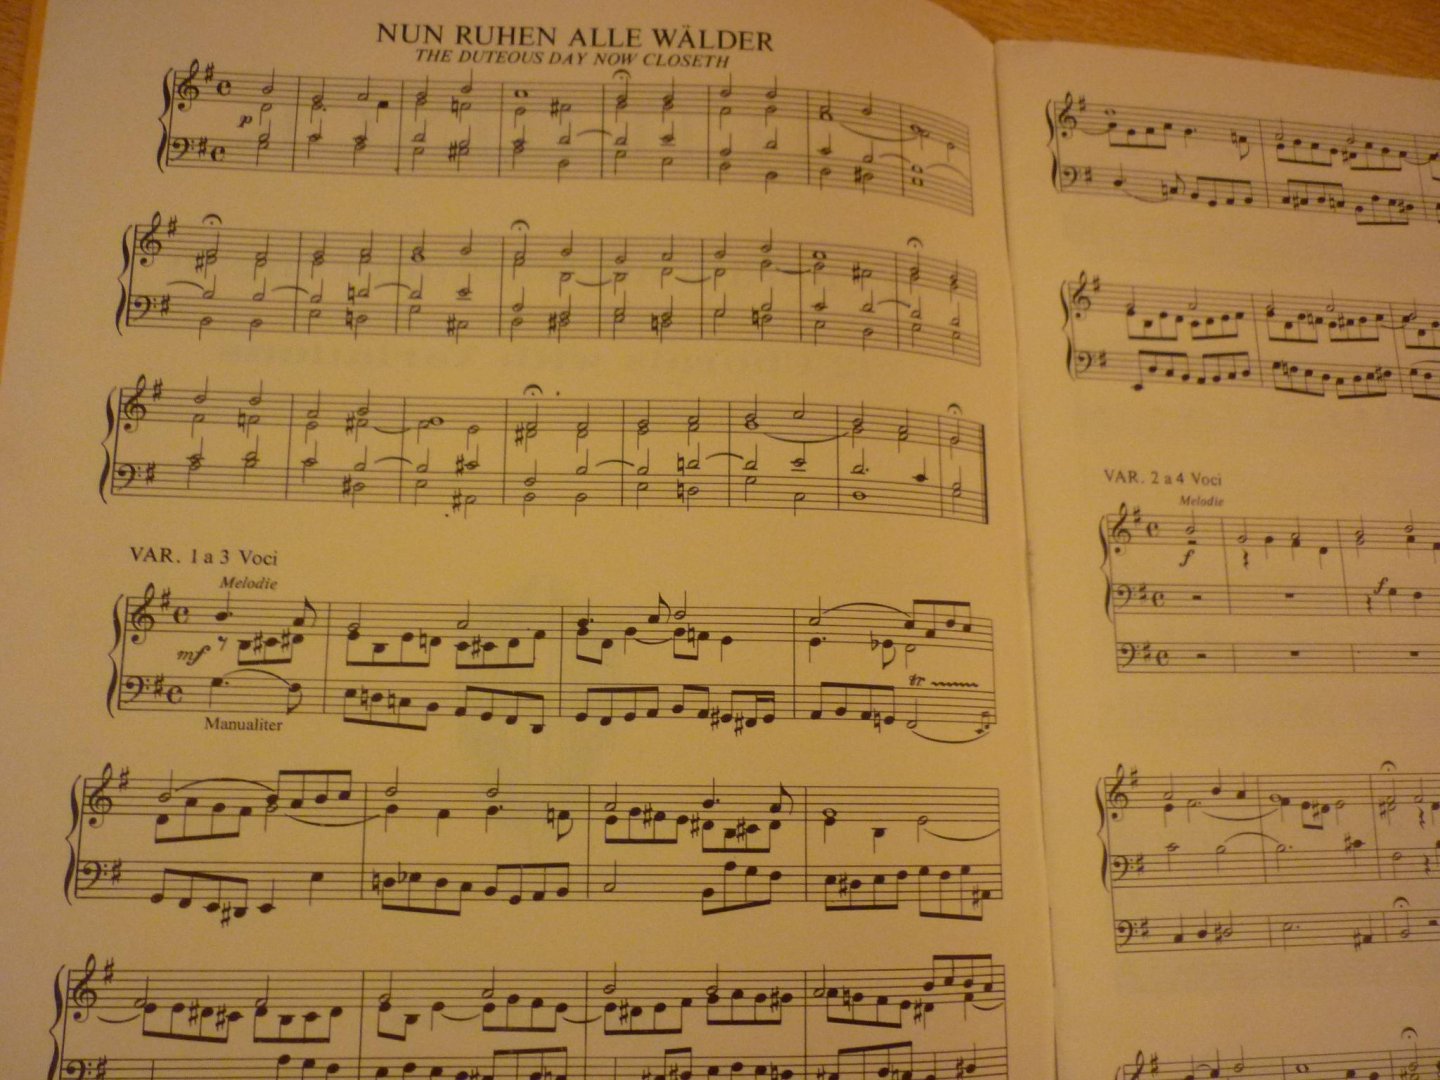 Rinck; Christian Heinrich (1770 - 1846) - 12 Chorale mit Veranderungen - voor orgel